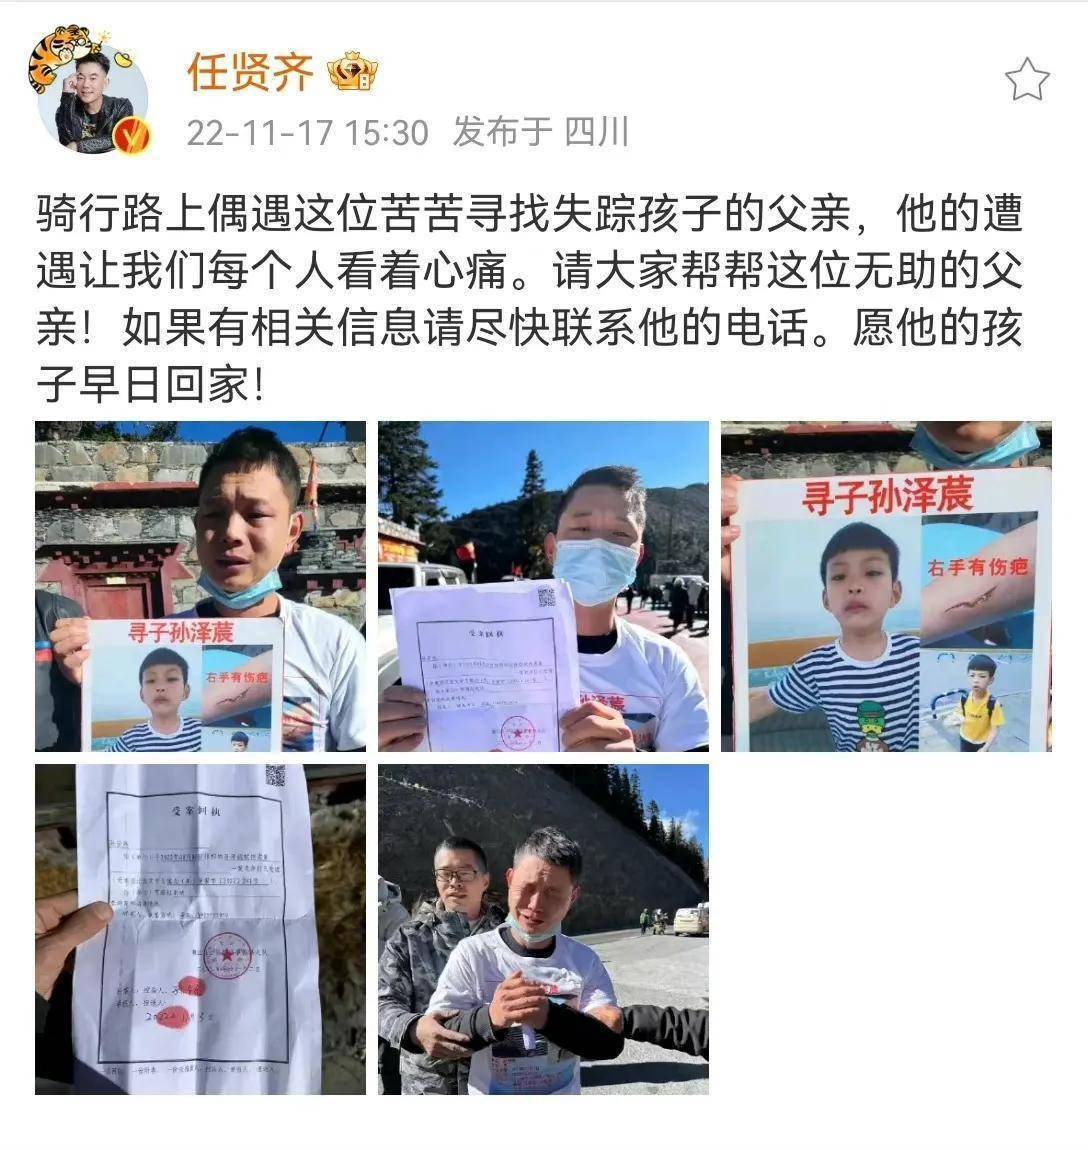 警方回应“任贤齐、张震岳等人转发男童失踪案”已经立案侦查